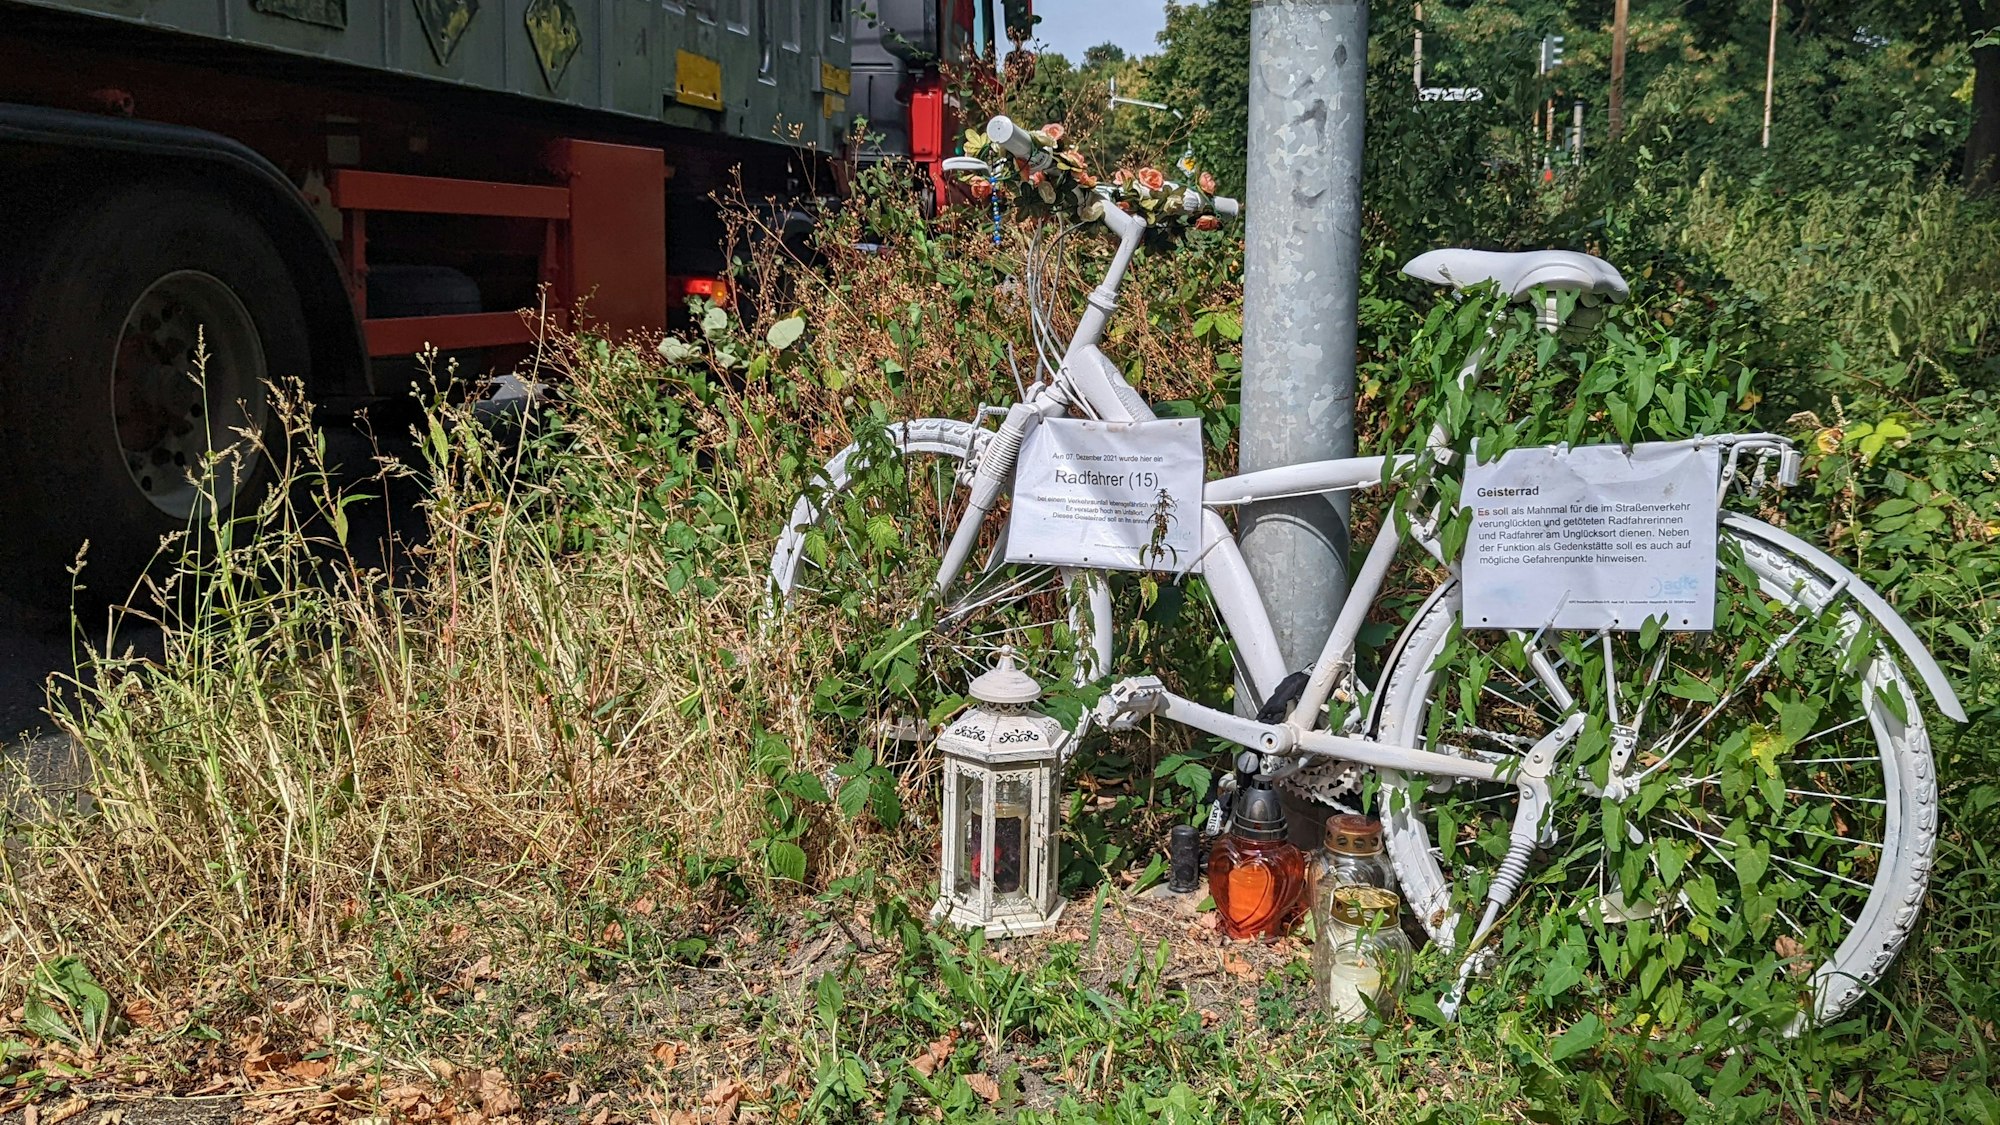 Auf dem Foto ist ein Geisterrad in Hürth zu sehen. Es ist weiß lackiert. Es erinnert an den 15-jährigen Radfahrer, der dort im Dezember 2021 von einem abbiegenden Lkw überrollt und getötet wurde.